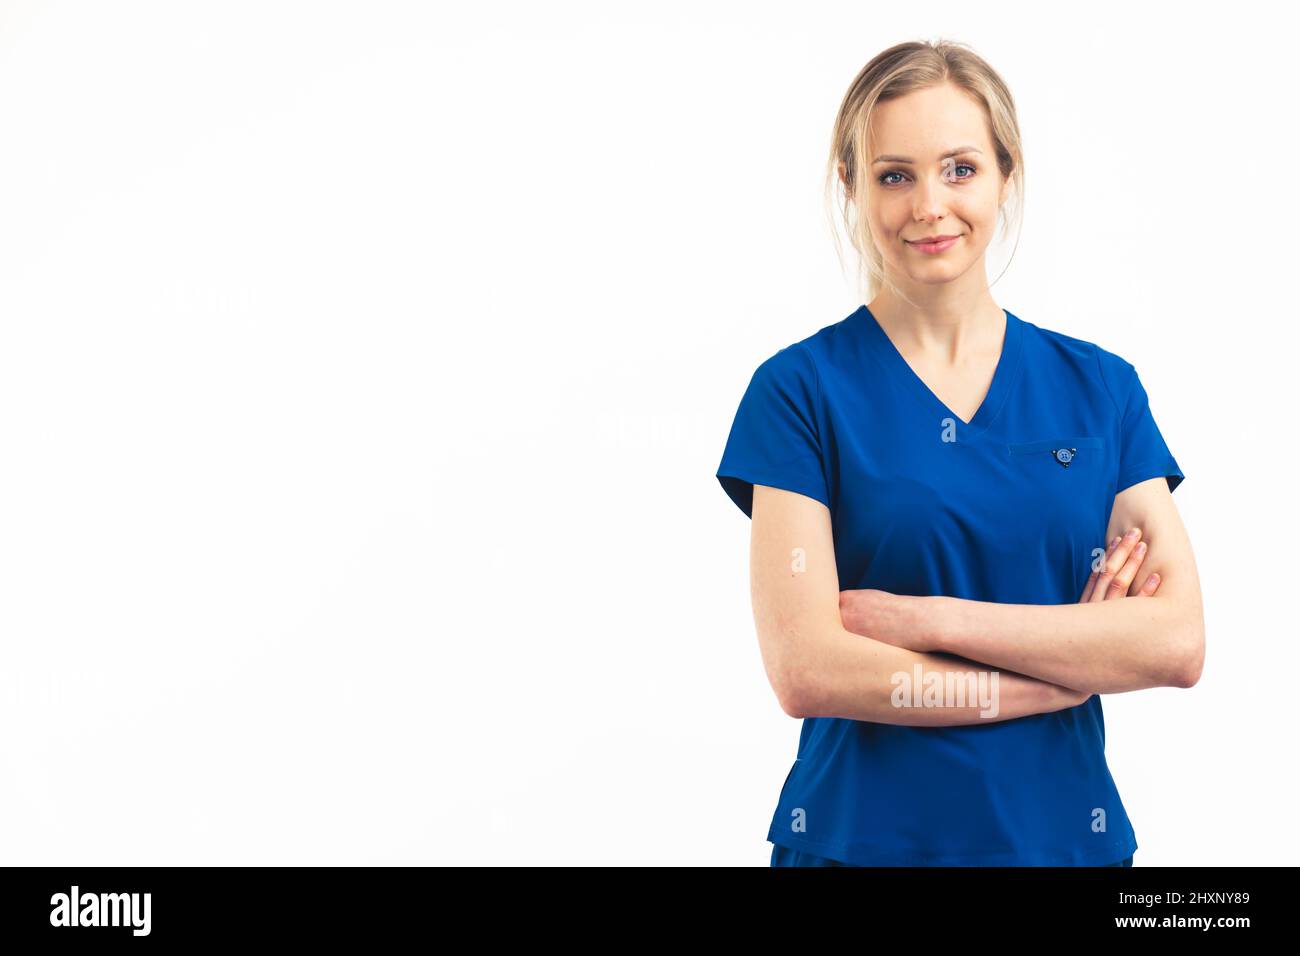 Femme blonde positive de soins de santé en uniforme bleu foncé regardant la caméra et croisant ses bras. Prise de vue en studio intermédiaire isolée. Photo de haute qualité Banque D'Images